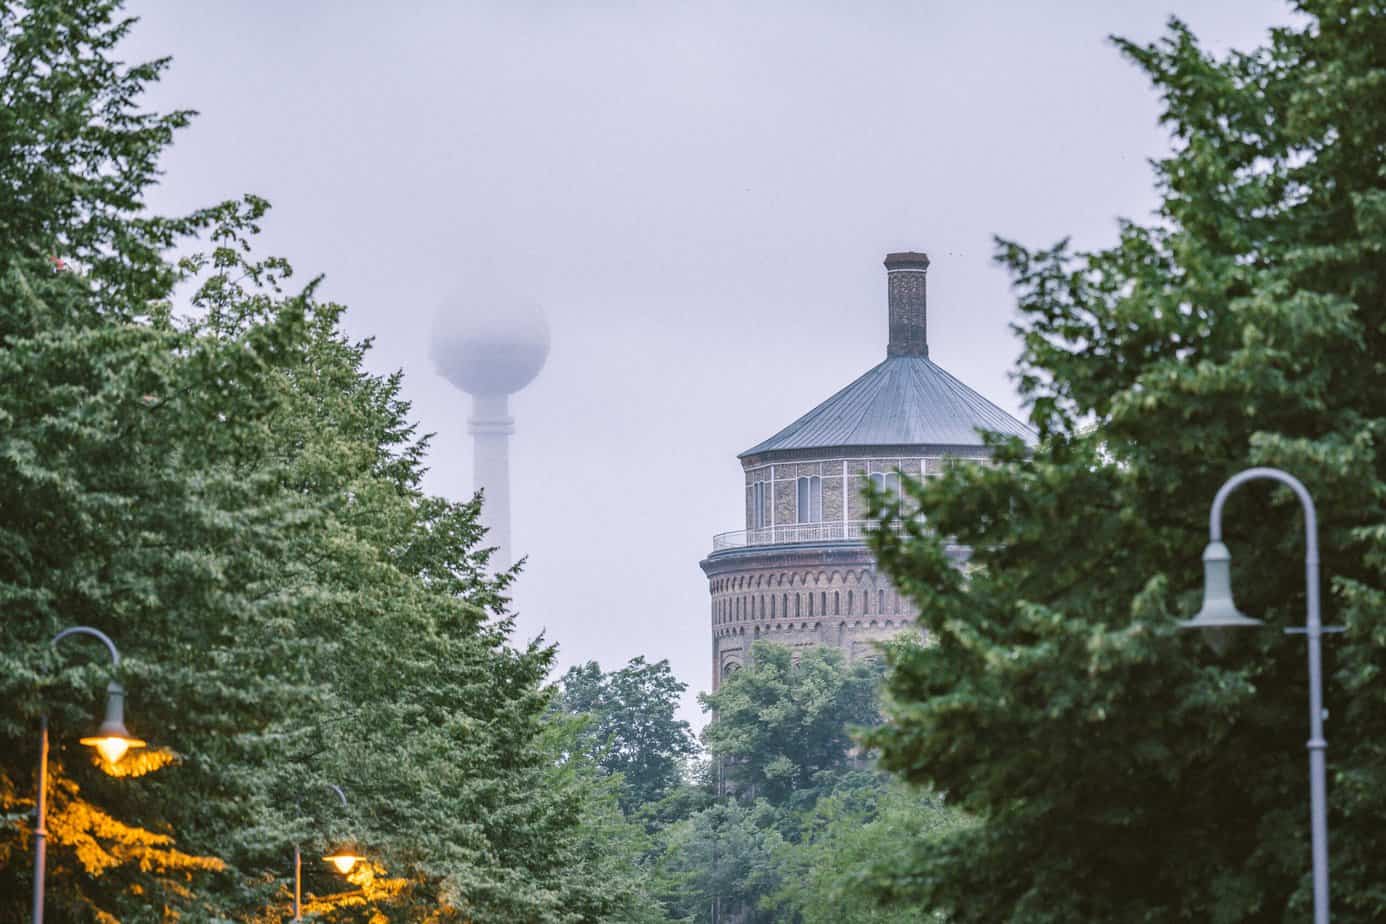 Foto vom Wasserturm in Prenzlauer Berg im Nebel mit Bäumen im Vordergrund